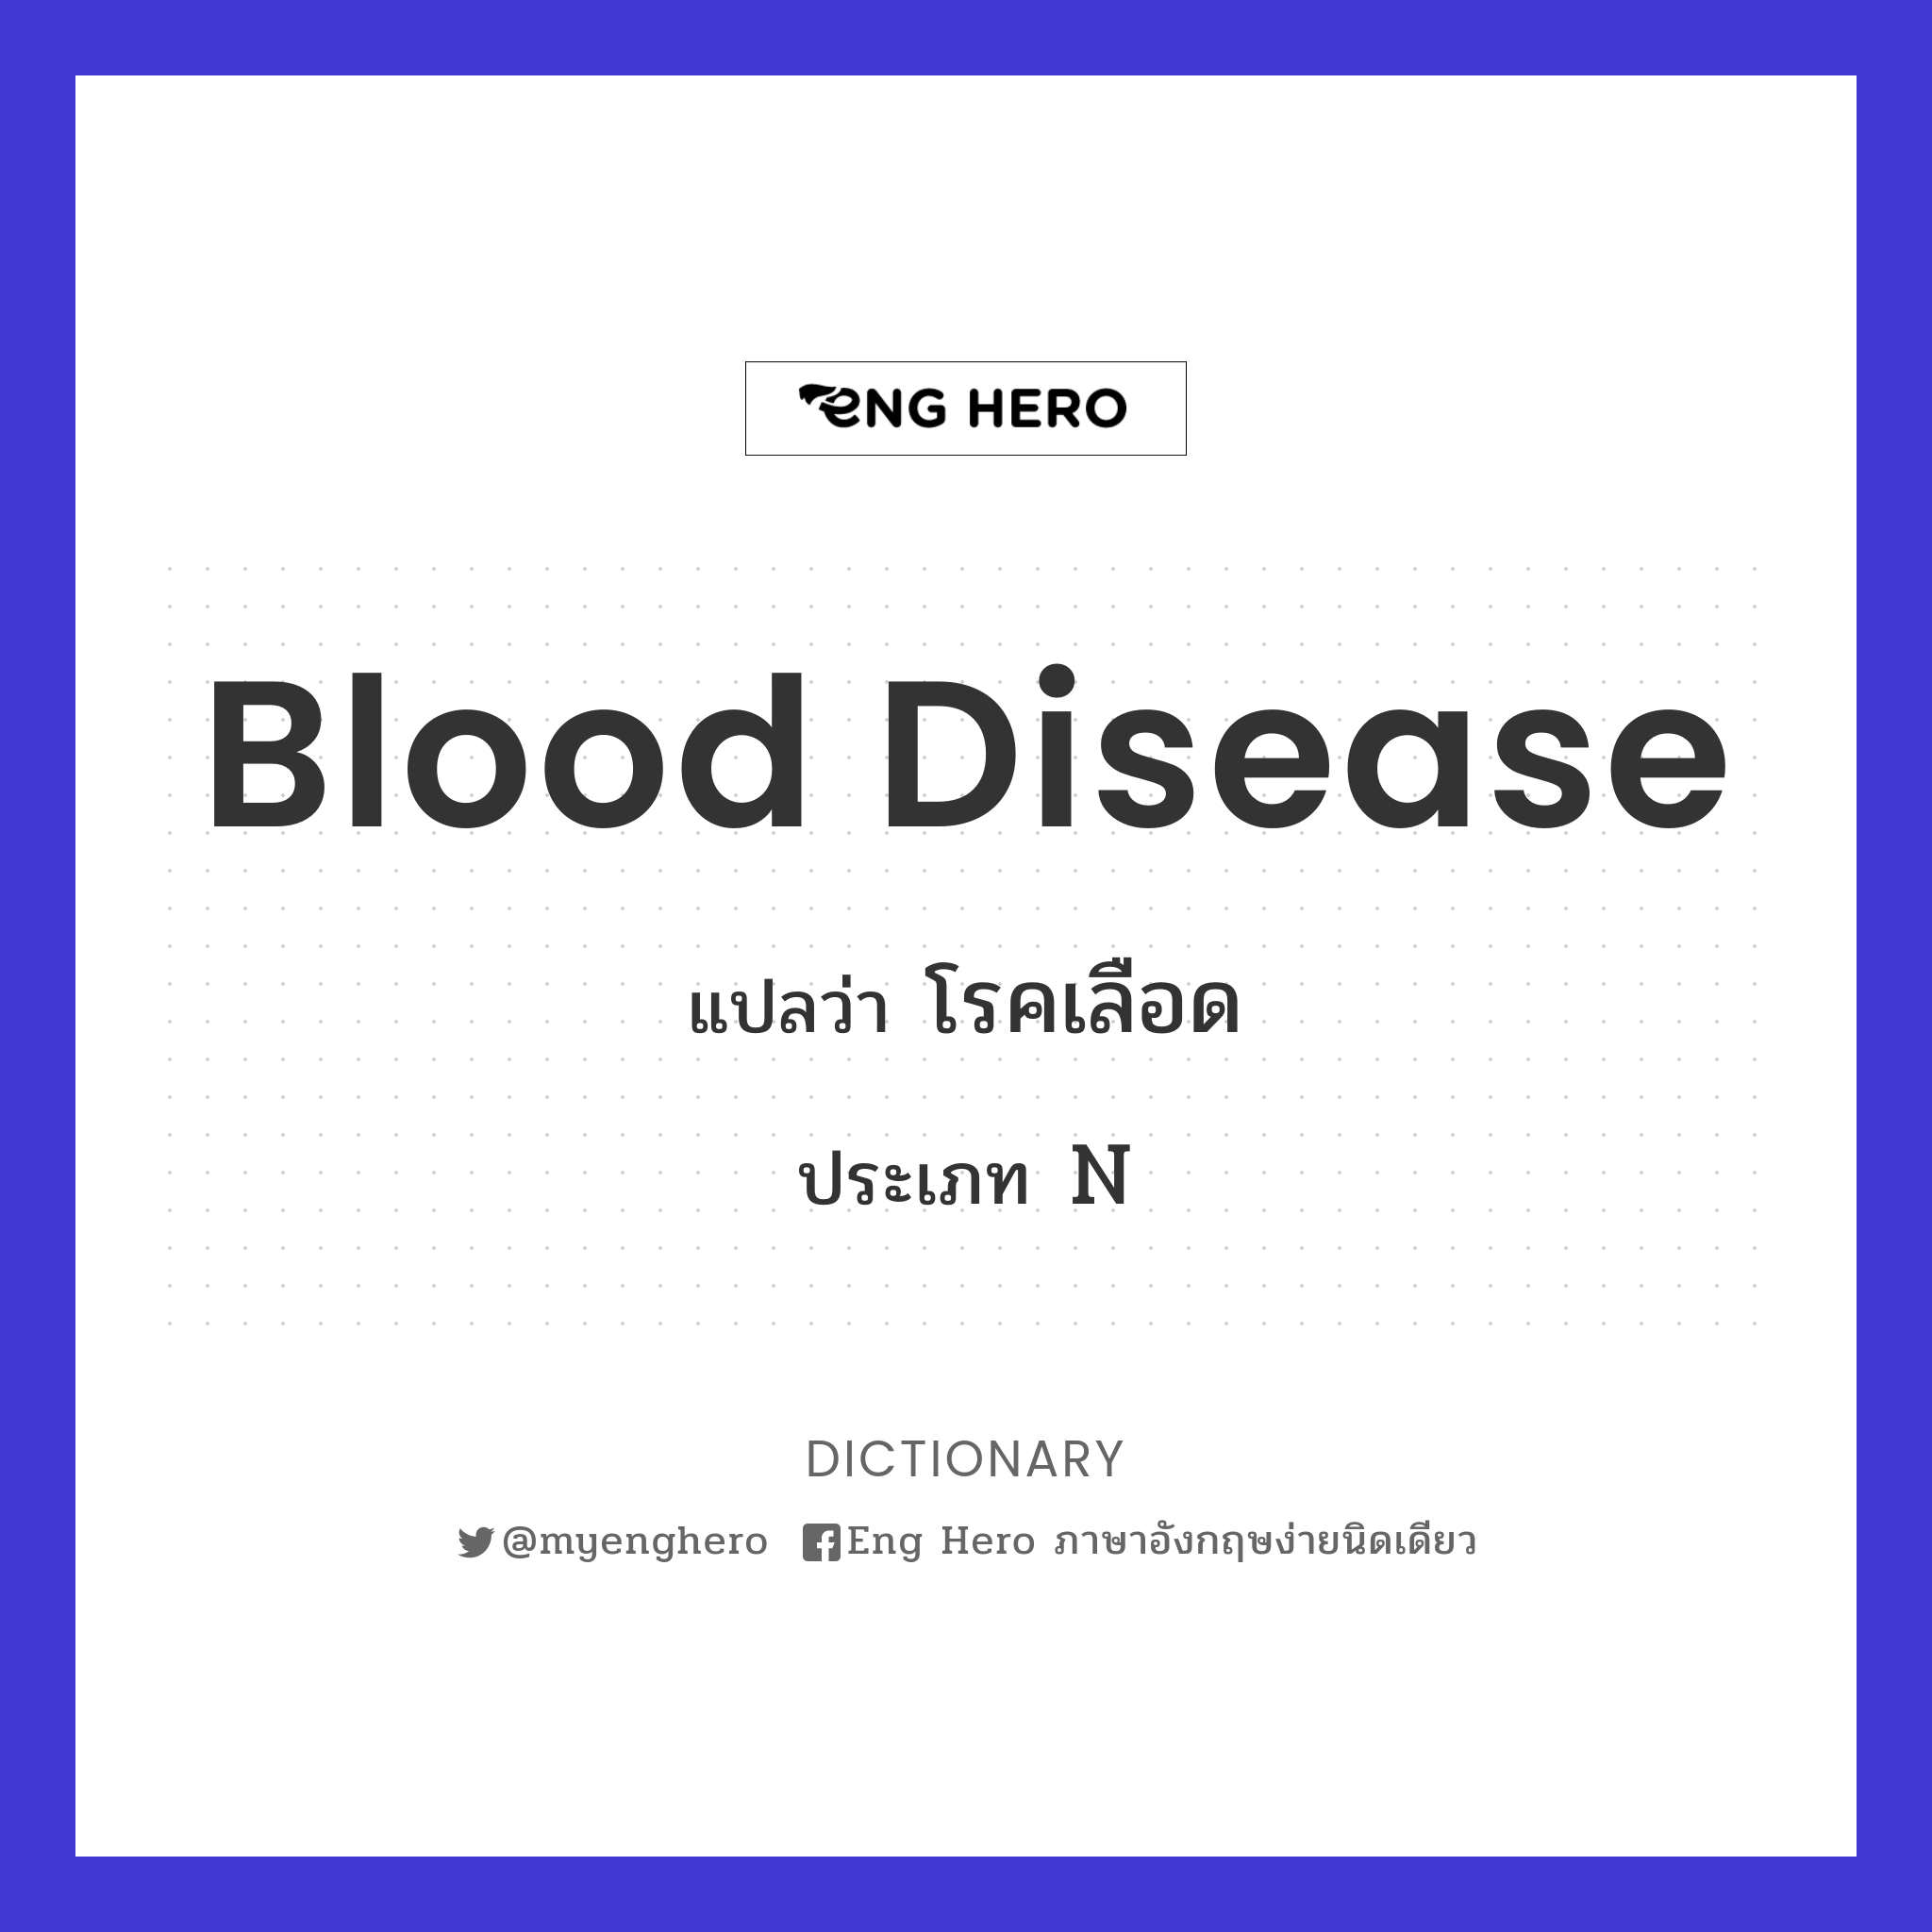 blood disease